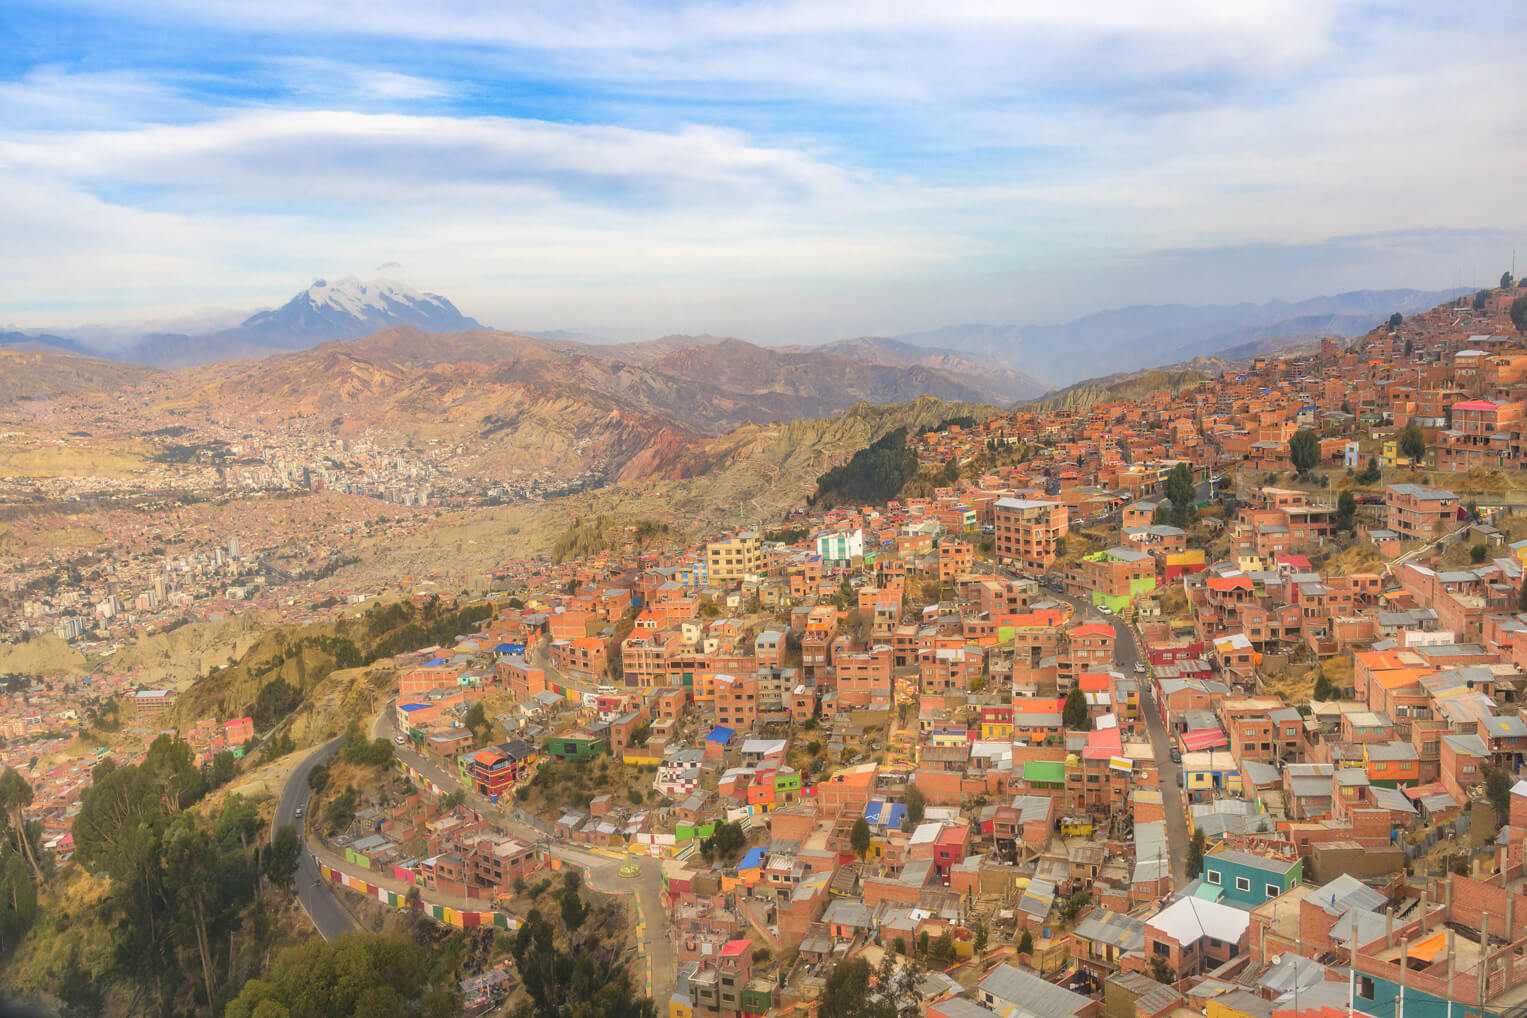 La ciudad de El Alto mira desde arriba a La Paz, una ciudad más grande, en estos picos de gran altitud en Los Andes.